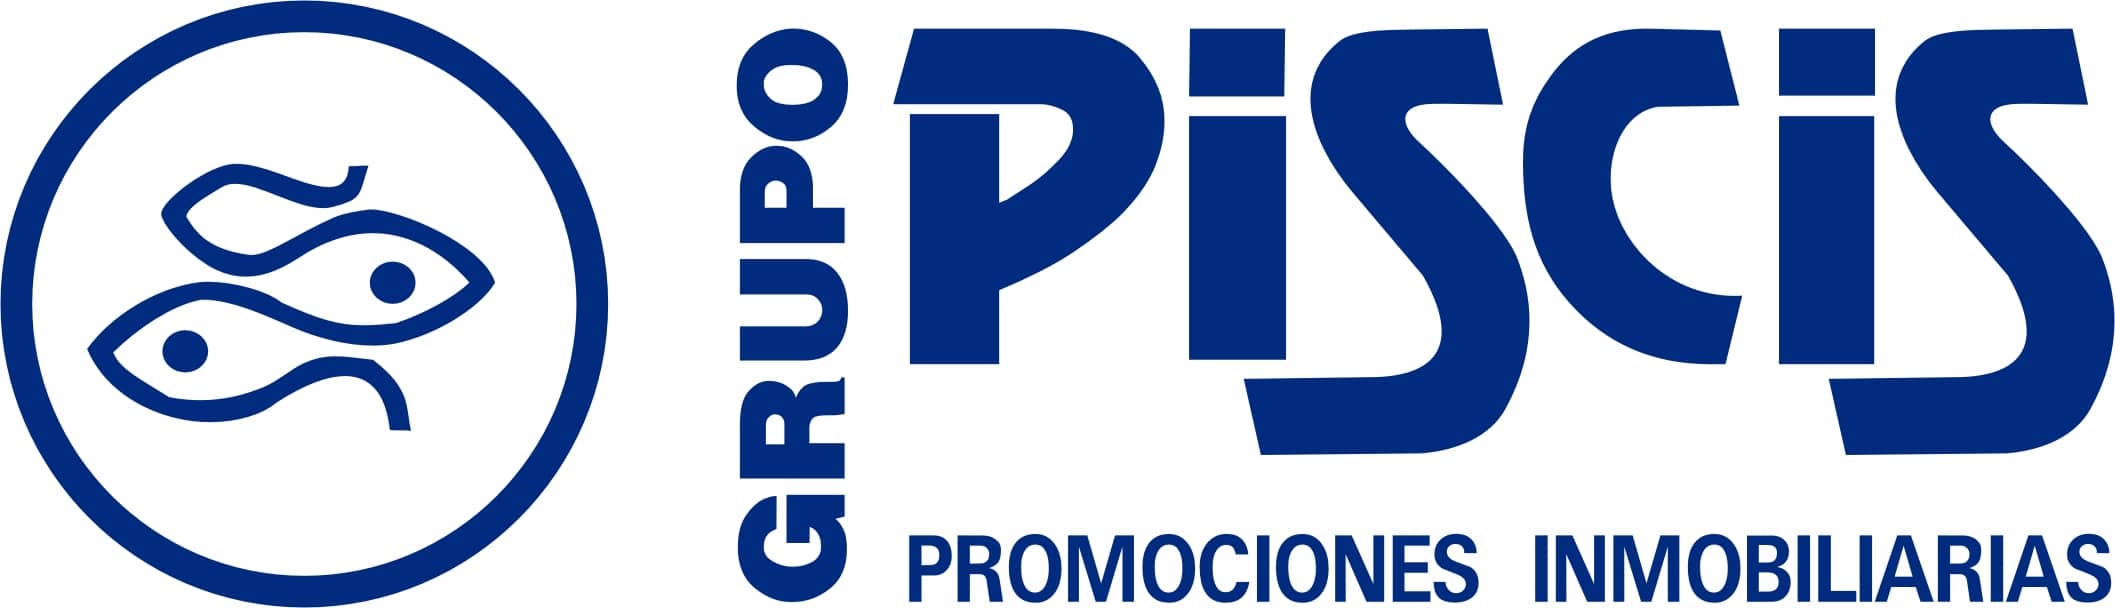 Venta y Alquiler Oficinas en Málaga - Grupo Piscis